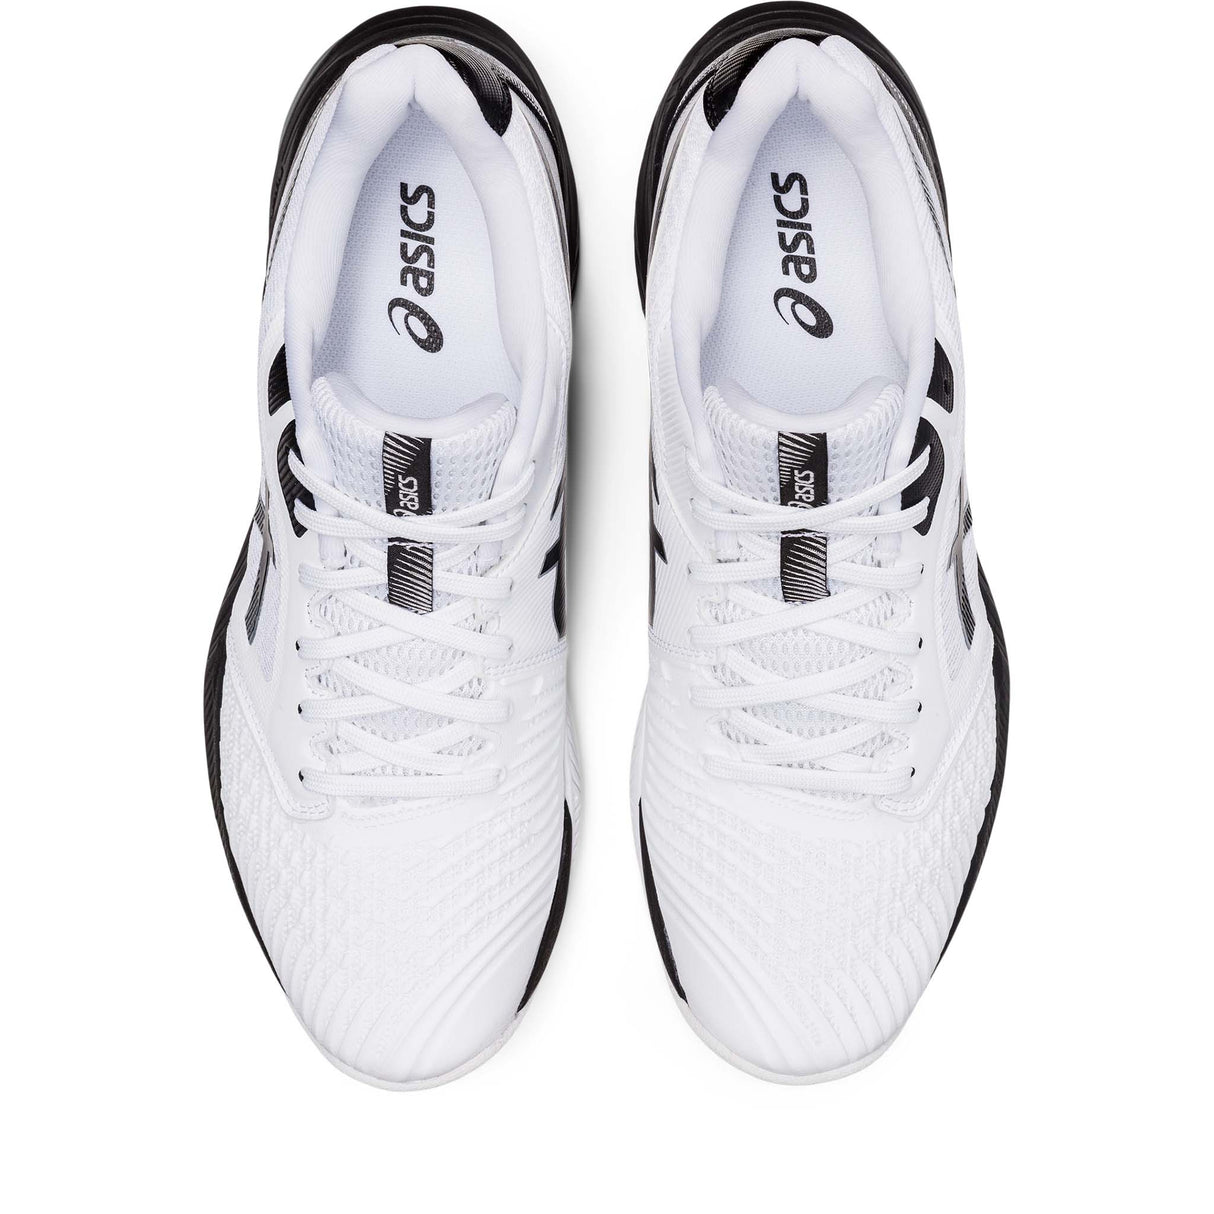 ASICS Netburner Ballistic FF 3 chaussures de volley-ball pour homme blanc noir empeigne